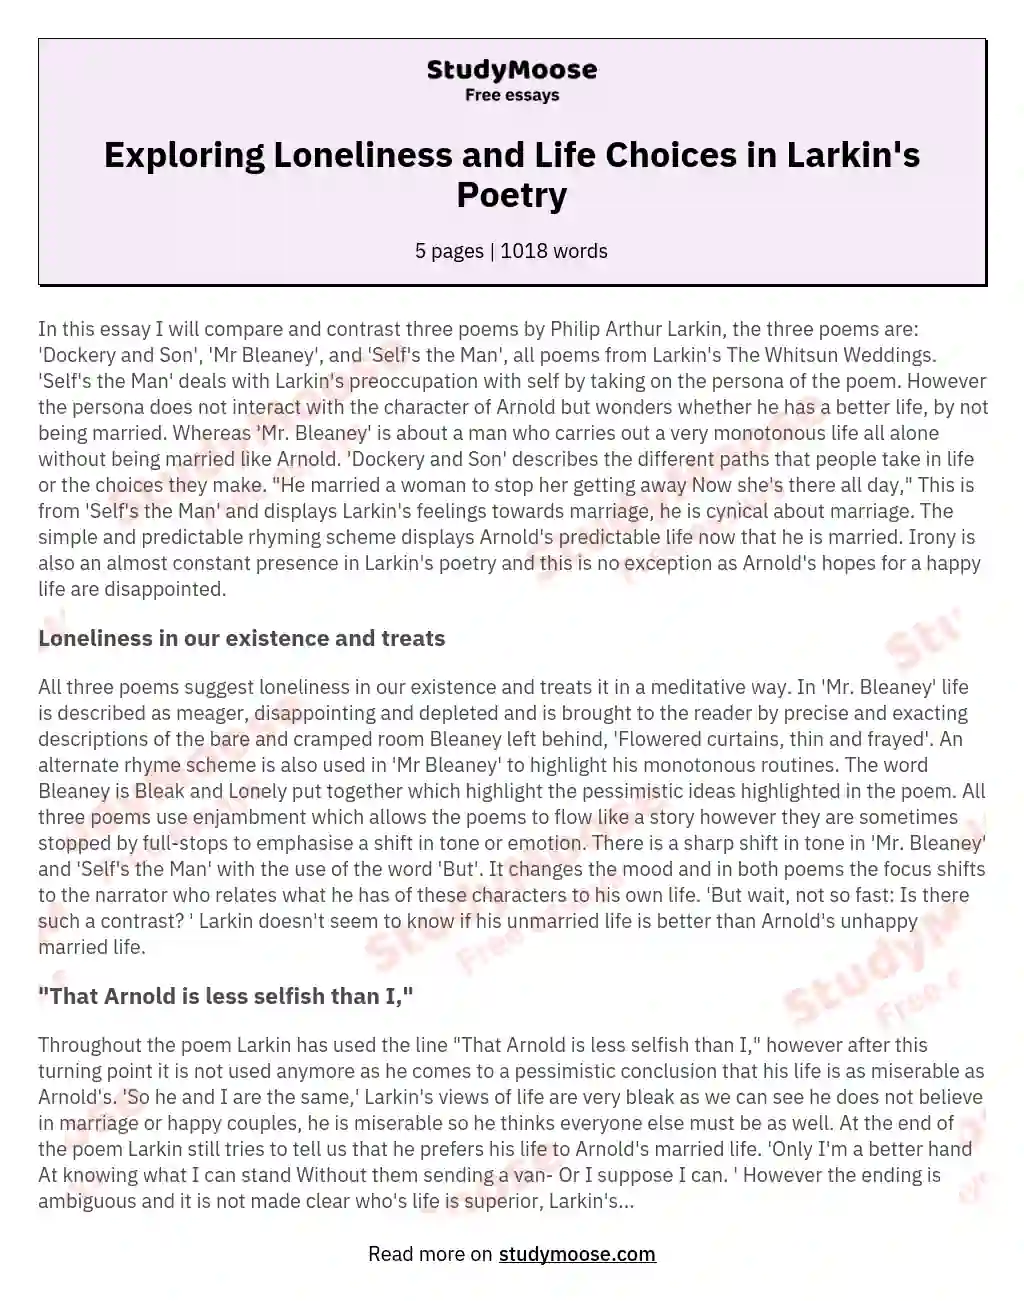 write an essay larkin as a poet